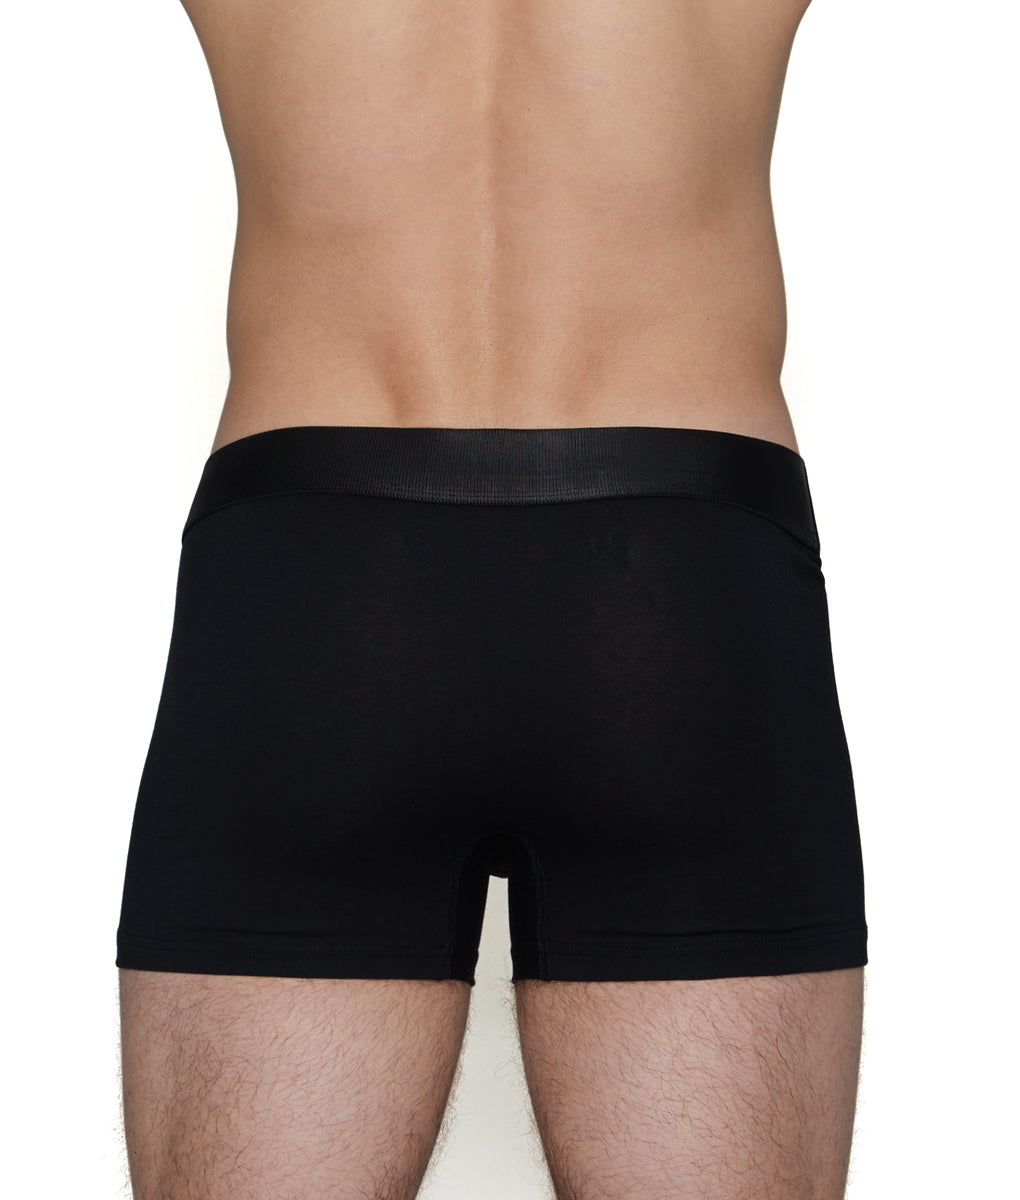 https://www.underwearexpert.com/cdn/shop/products/UnderwearExpert-Trunk-02400-03-black-b.jpg?v=1661546605